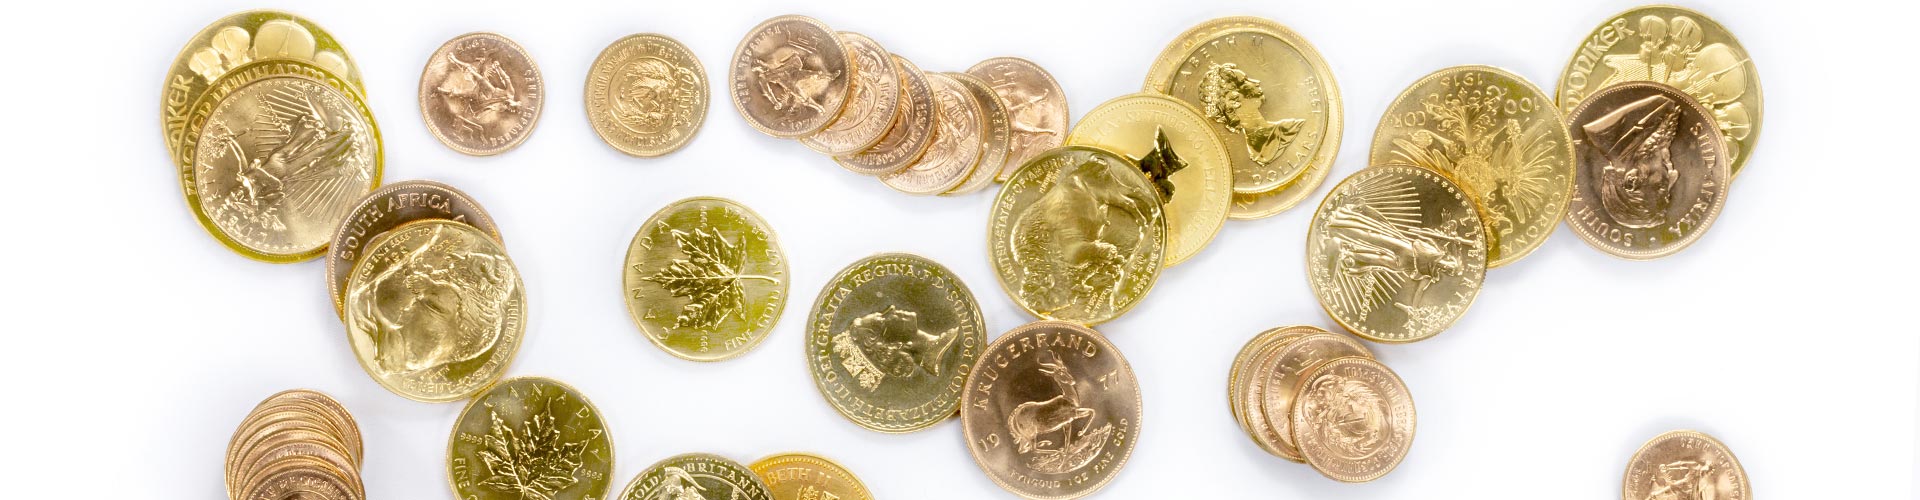 Verschiedene Goldmünzen und Goldanlagemünzen unter anderem Krügerrand, Maple Leaf und Golden Nugget